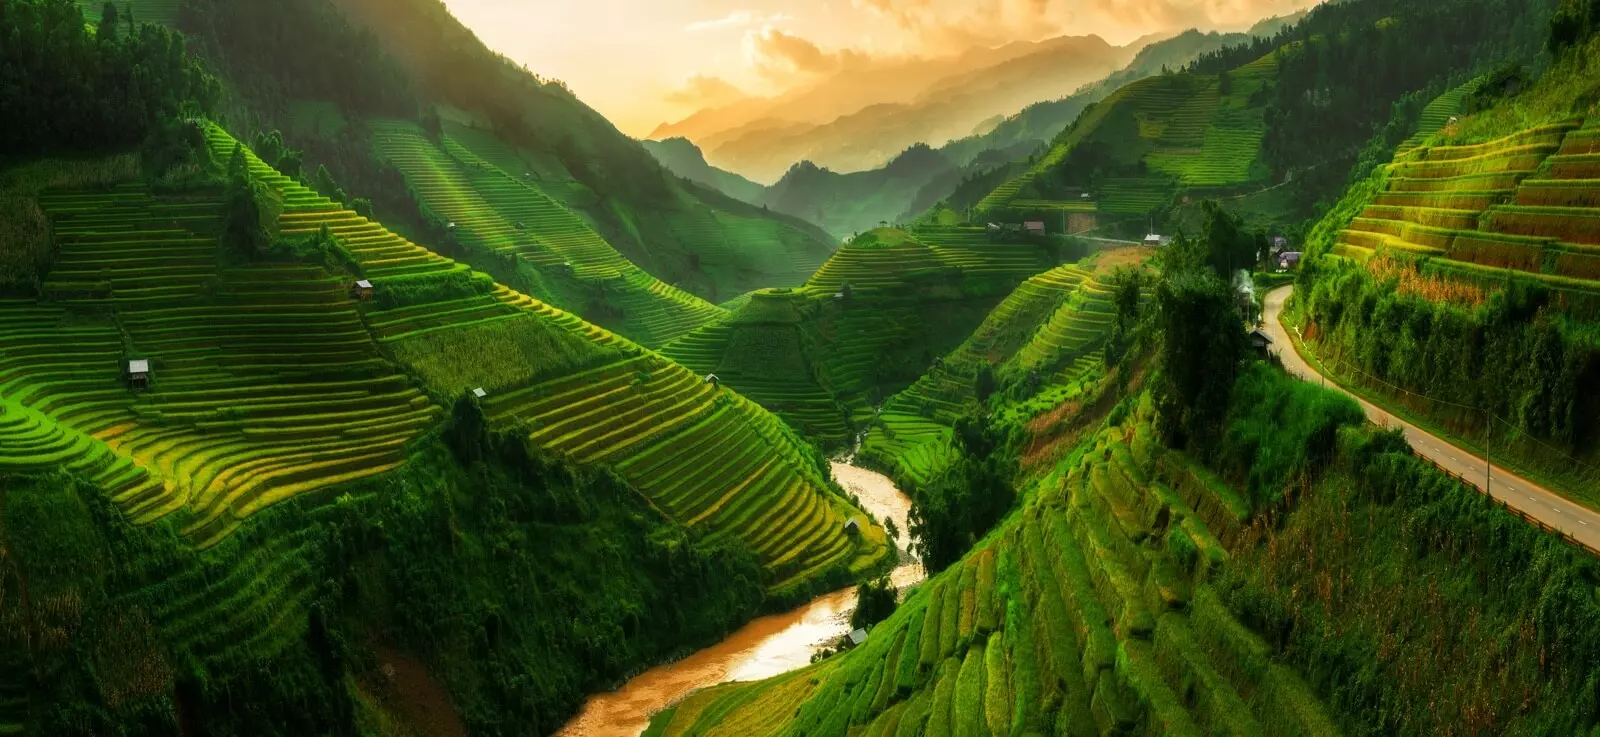 Campos de arroz, Vietnam